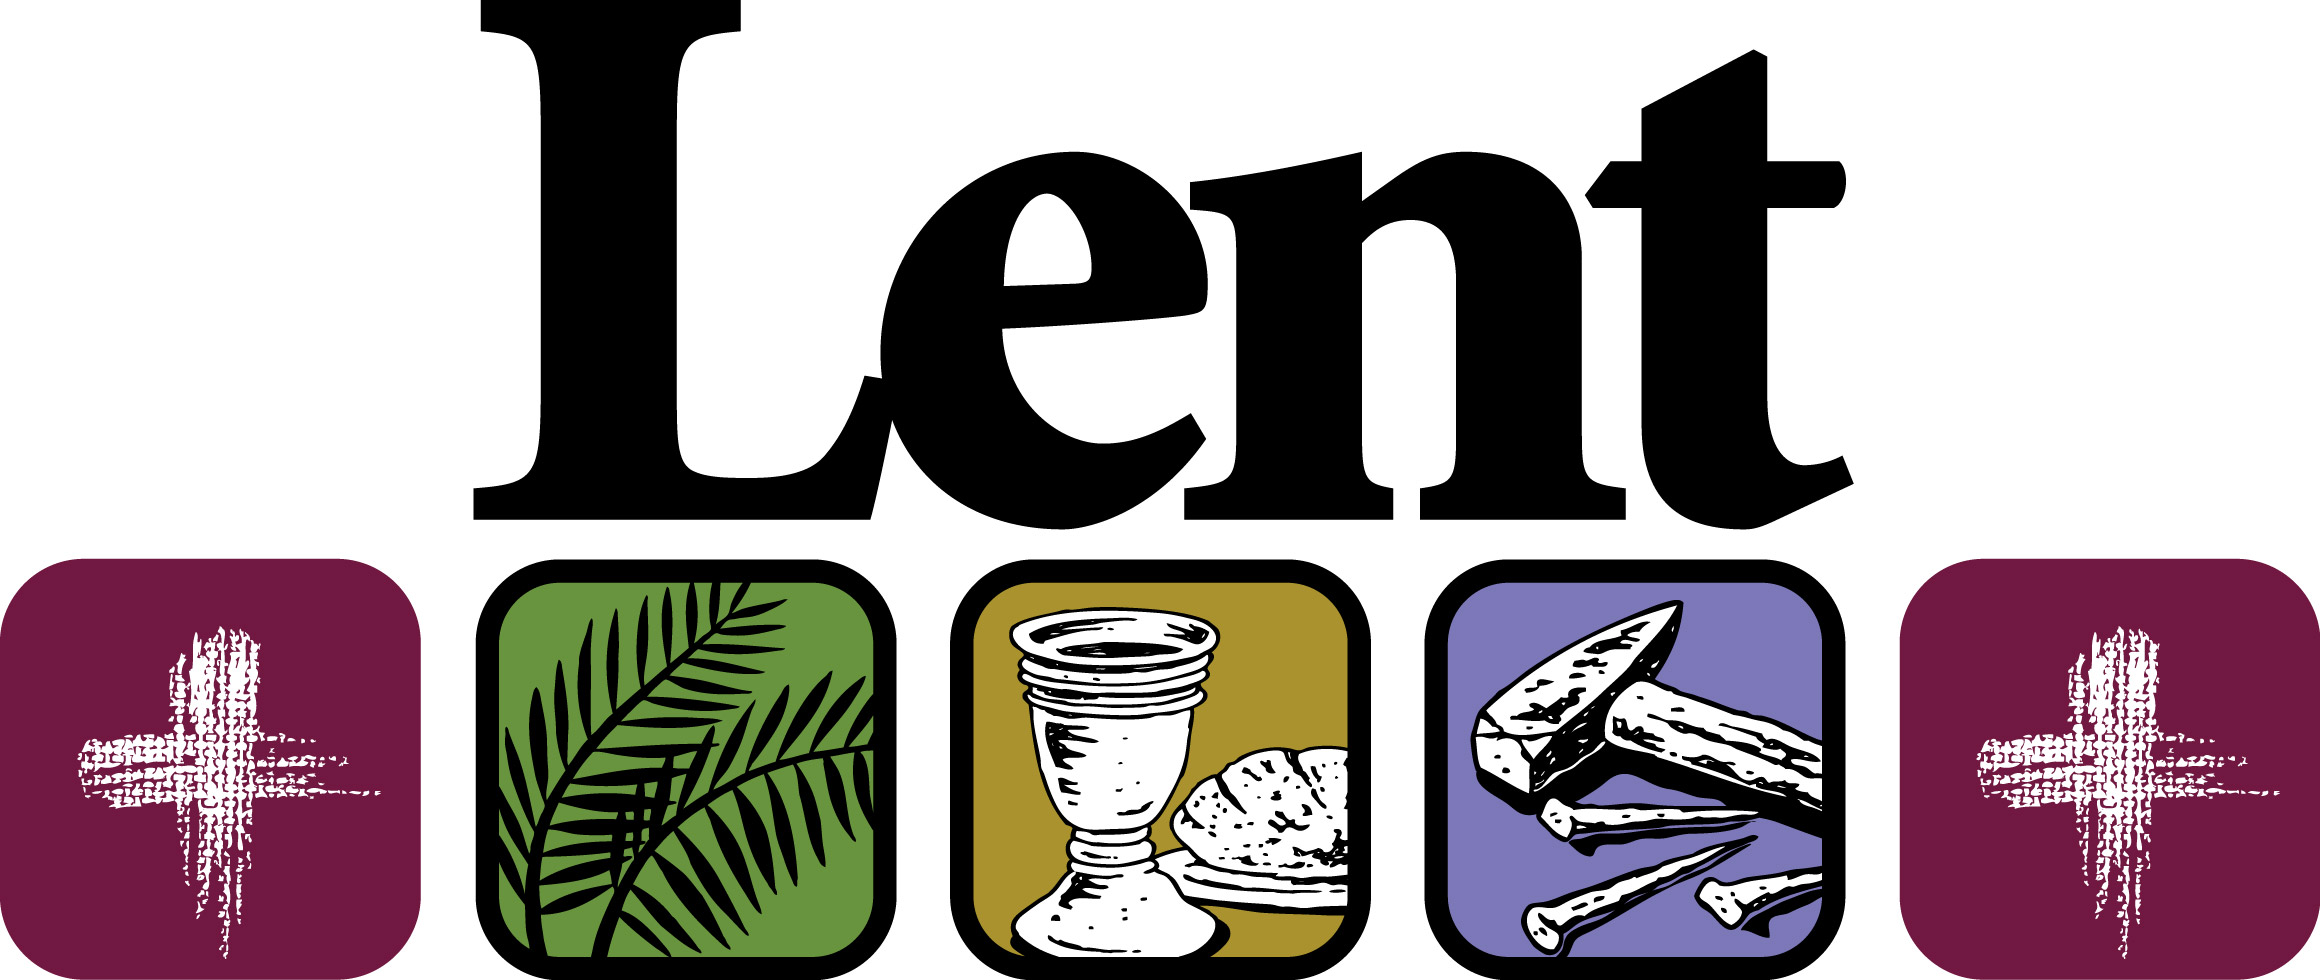 catholic clipart lent